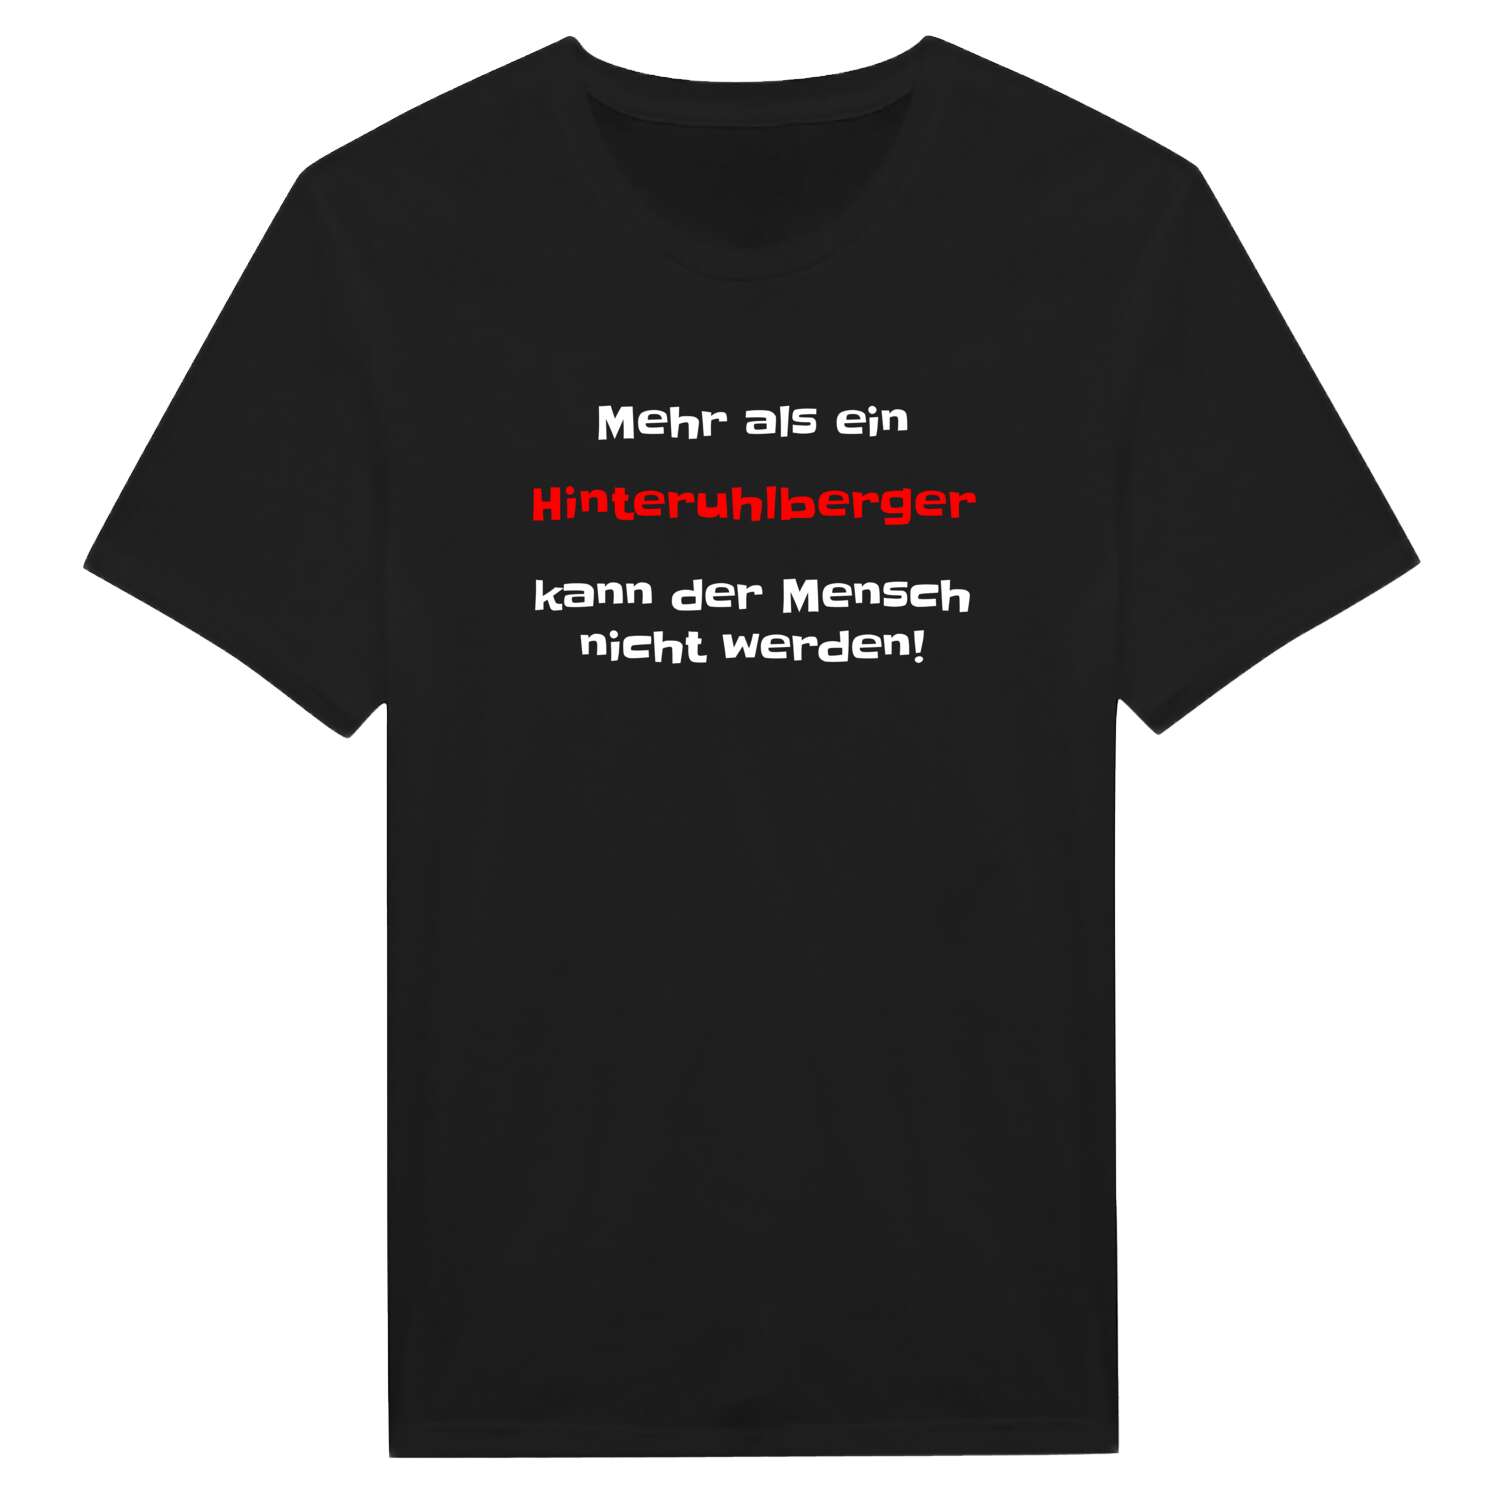 Hinteruhlberg T-Shirt »Mehr als ein«